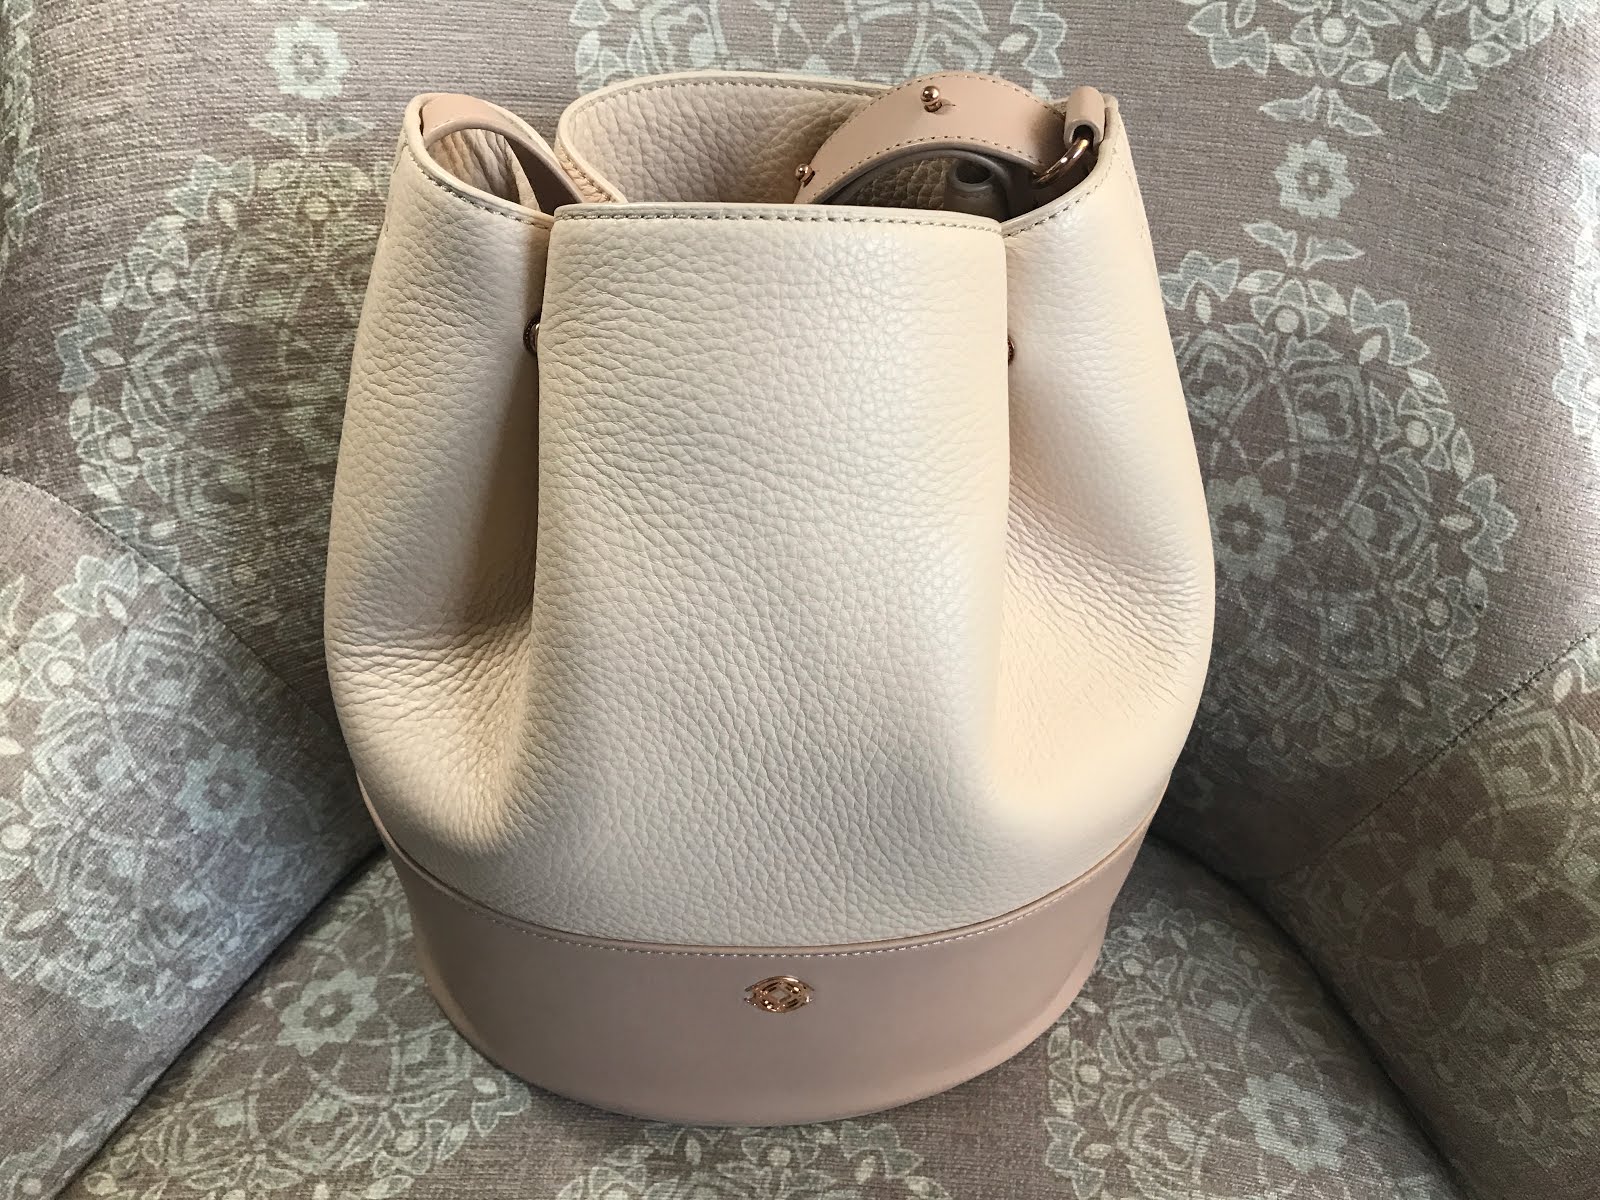 The Beauty Blender — Dagne Dover, Favorite New Bucket Bag!